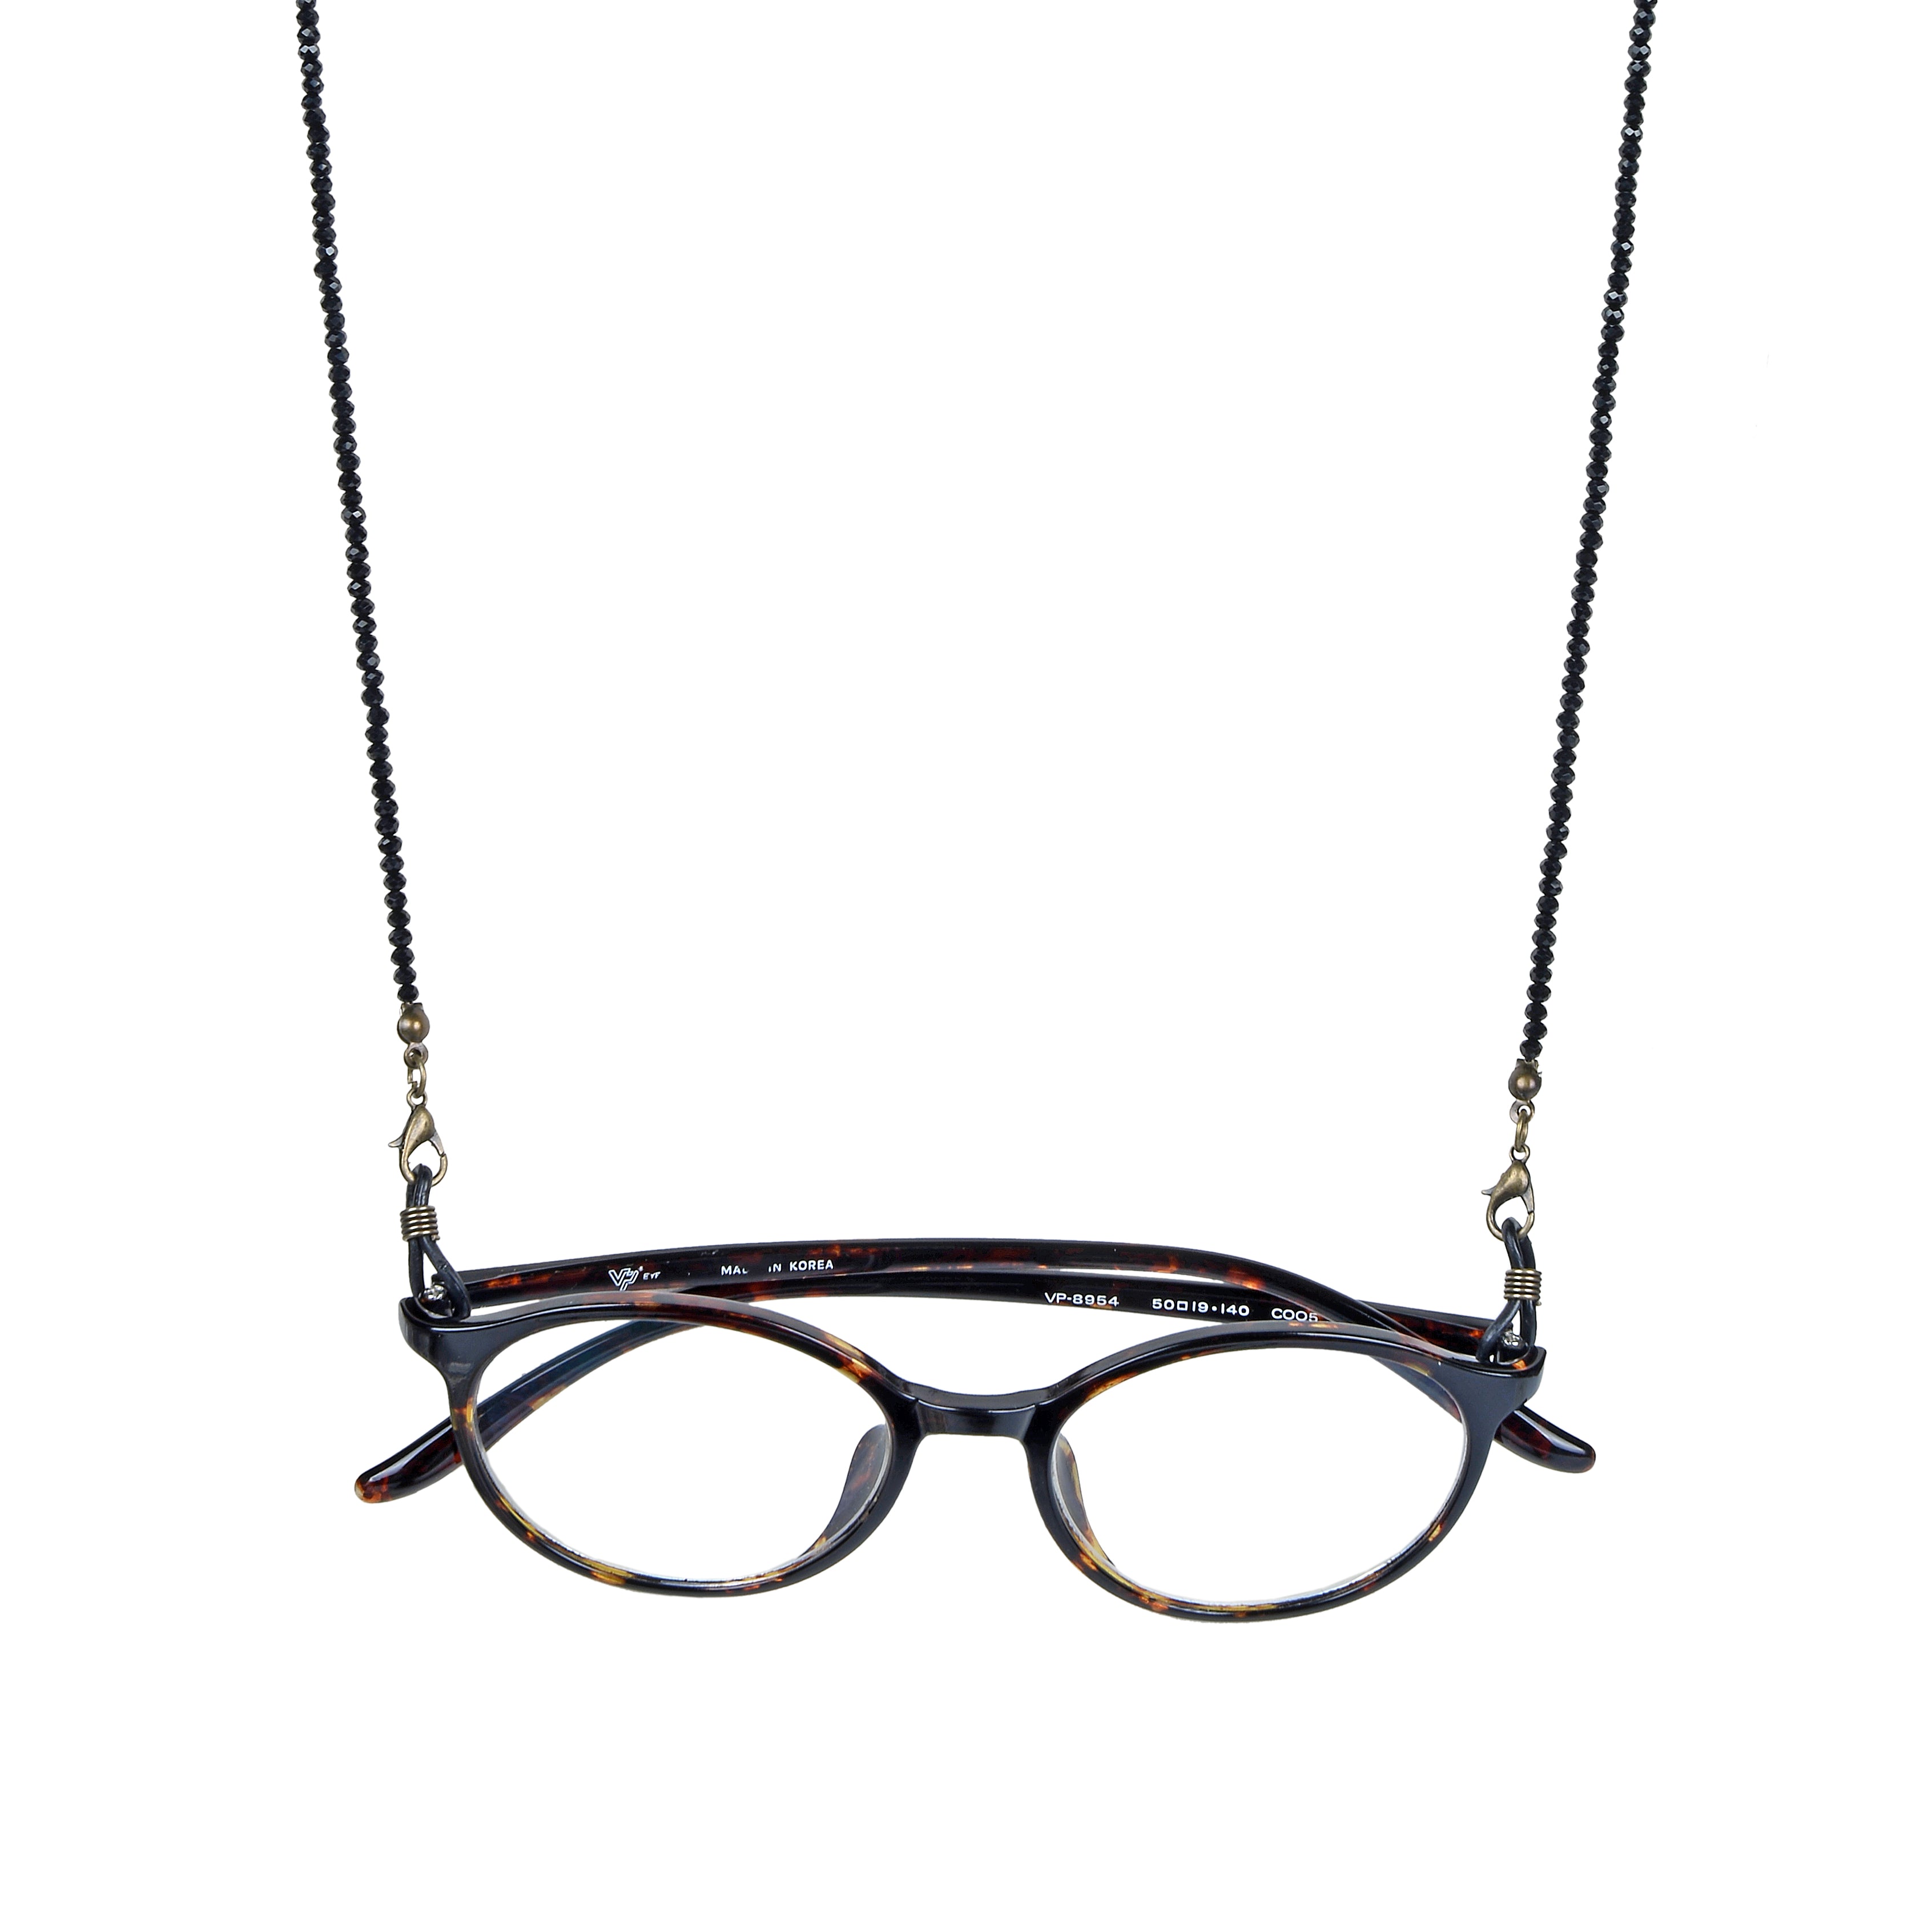 Lanyard Eyeglasses Crystal  Necklace N3188